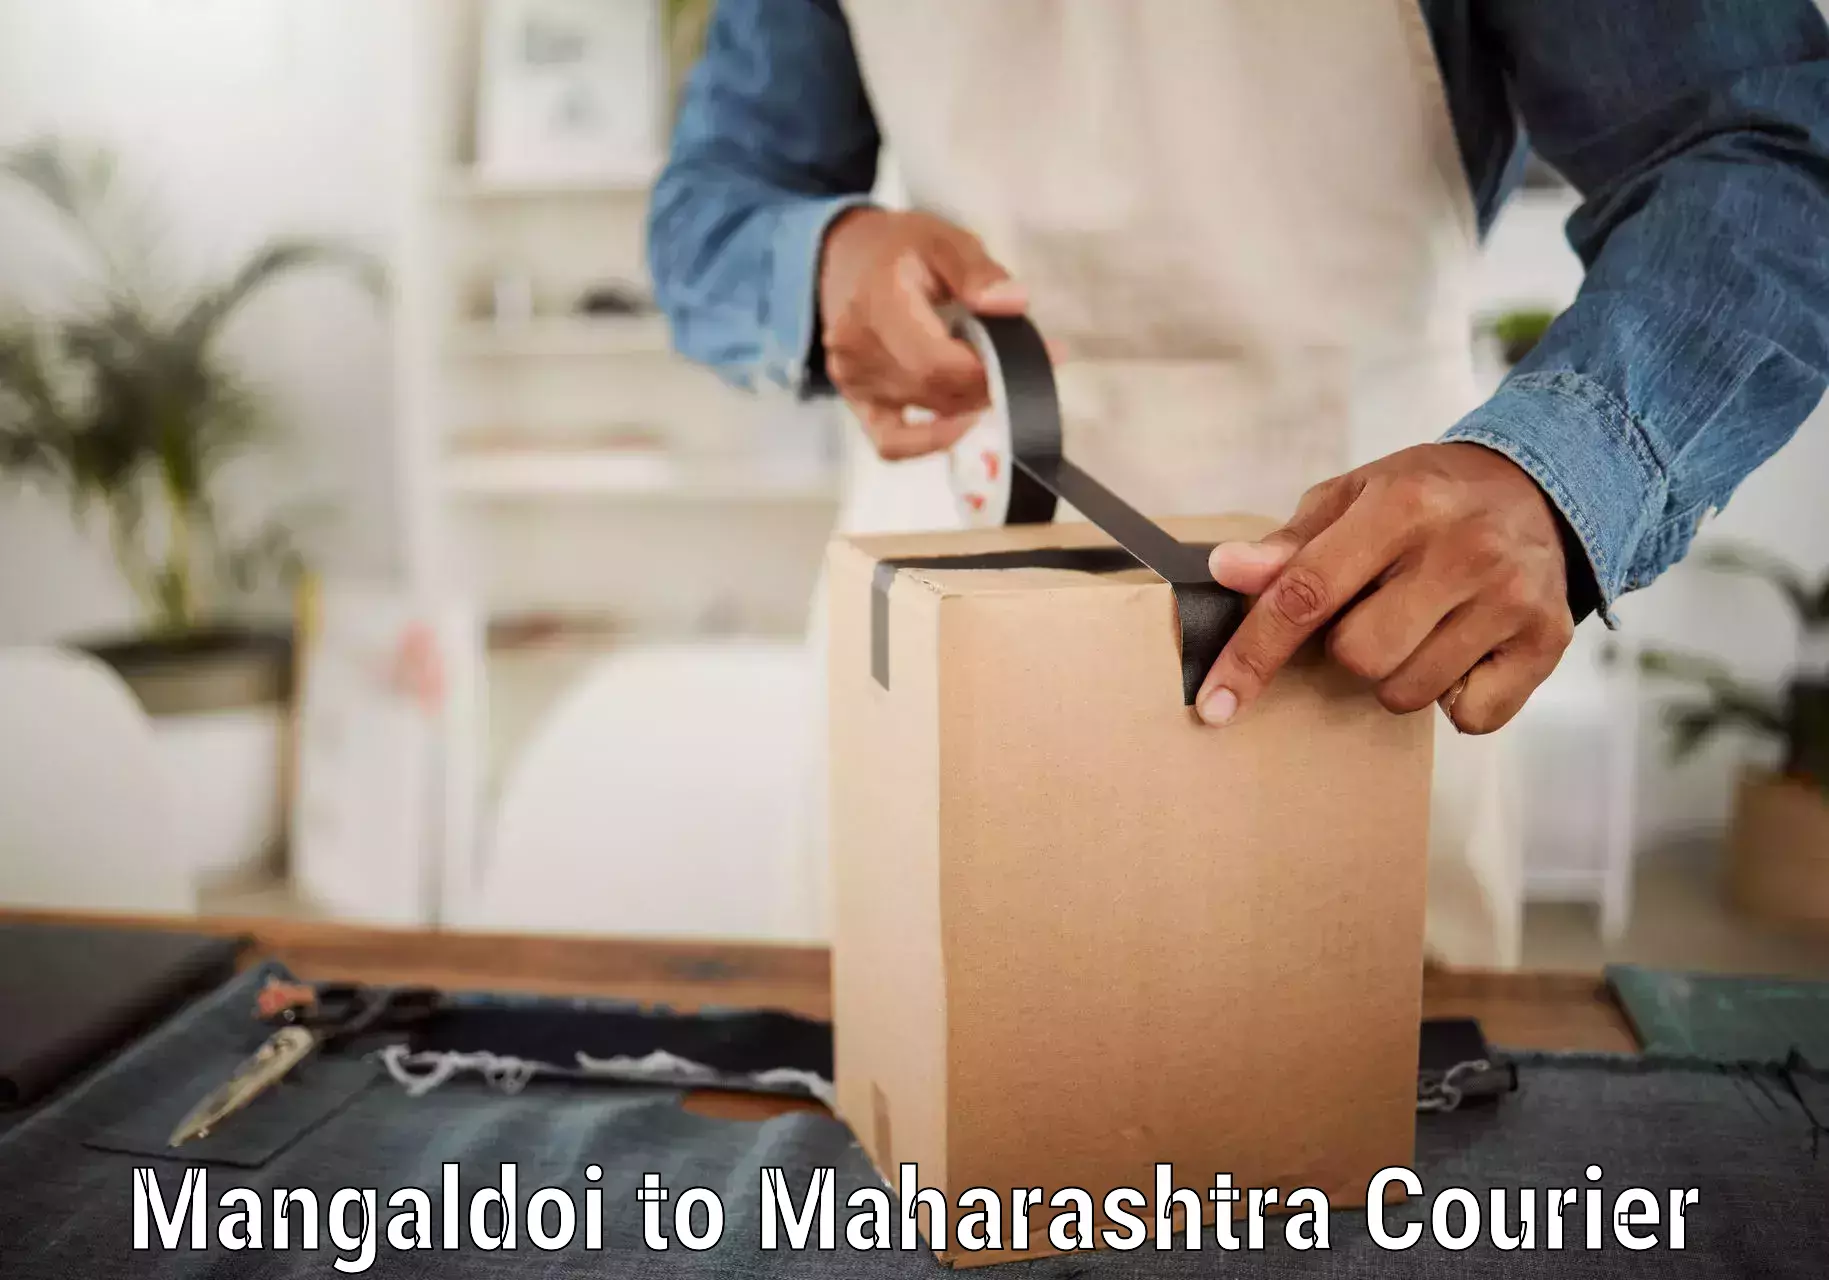 Multi-city courier Mangaldoi to Borivali